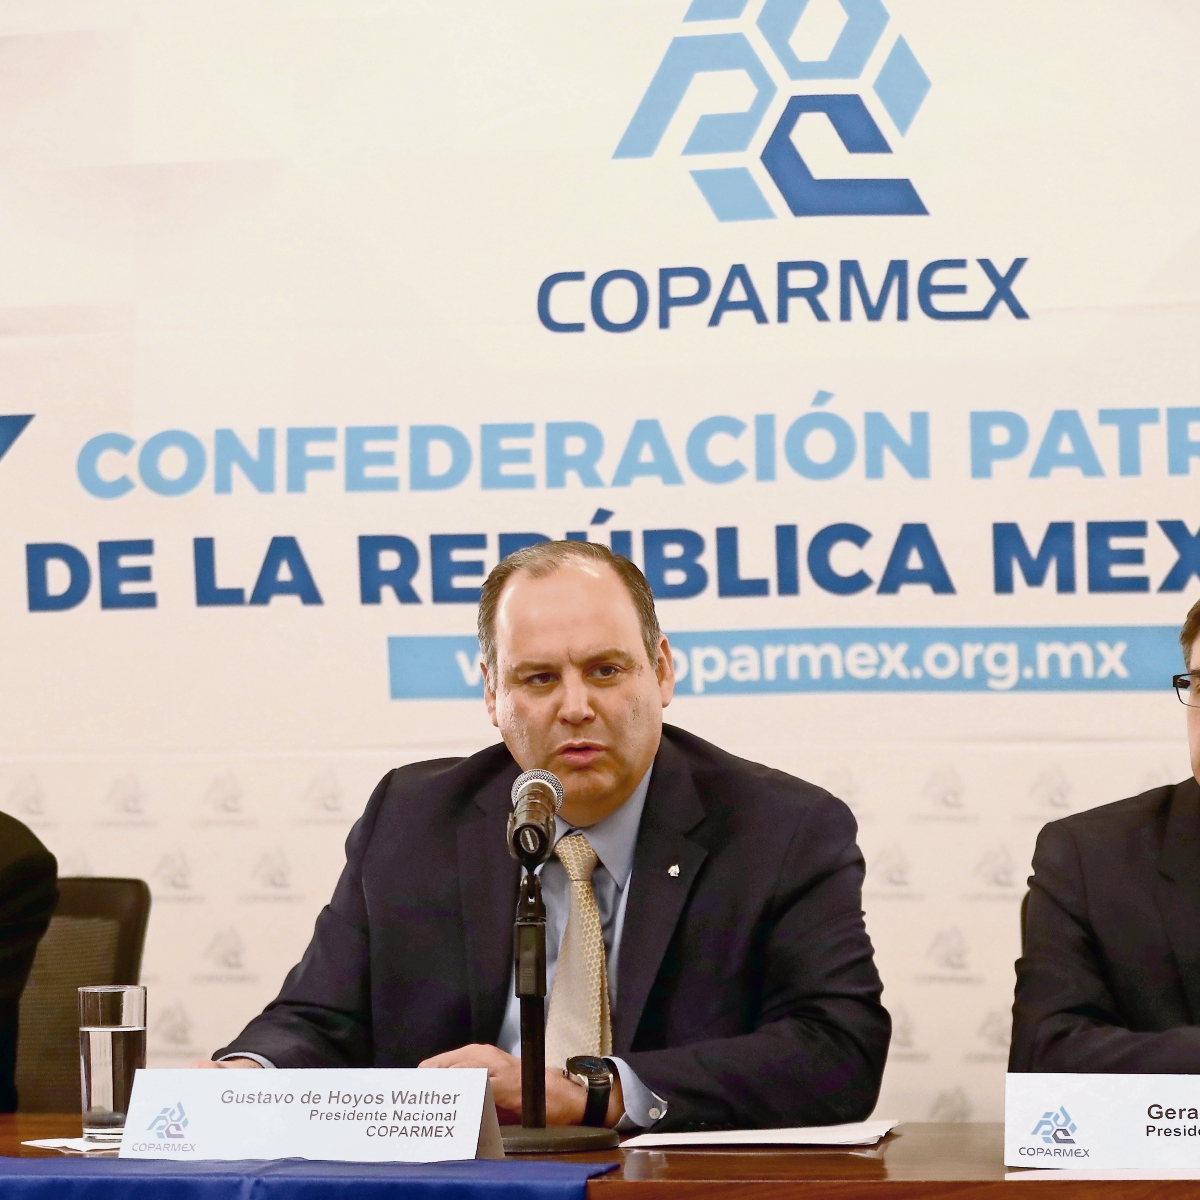 El salario mínimo puede subir a 102 pesos diarios: Coparmex